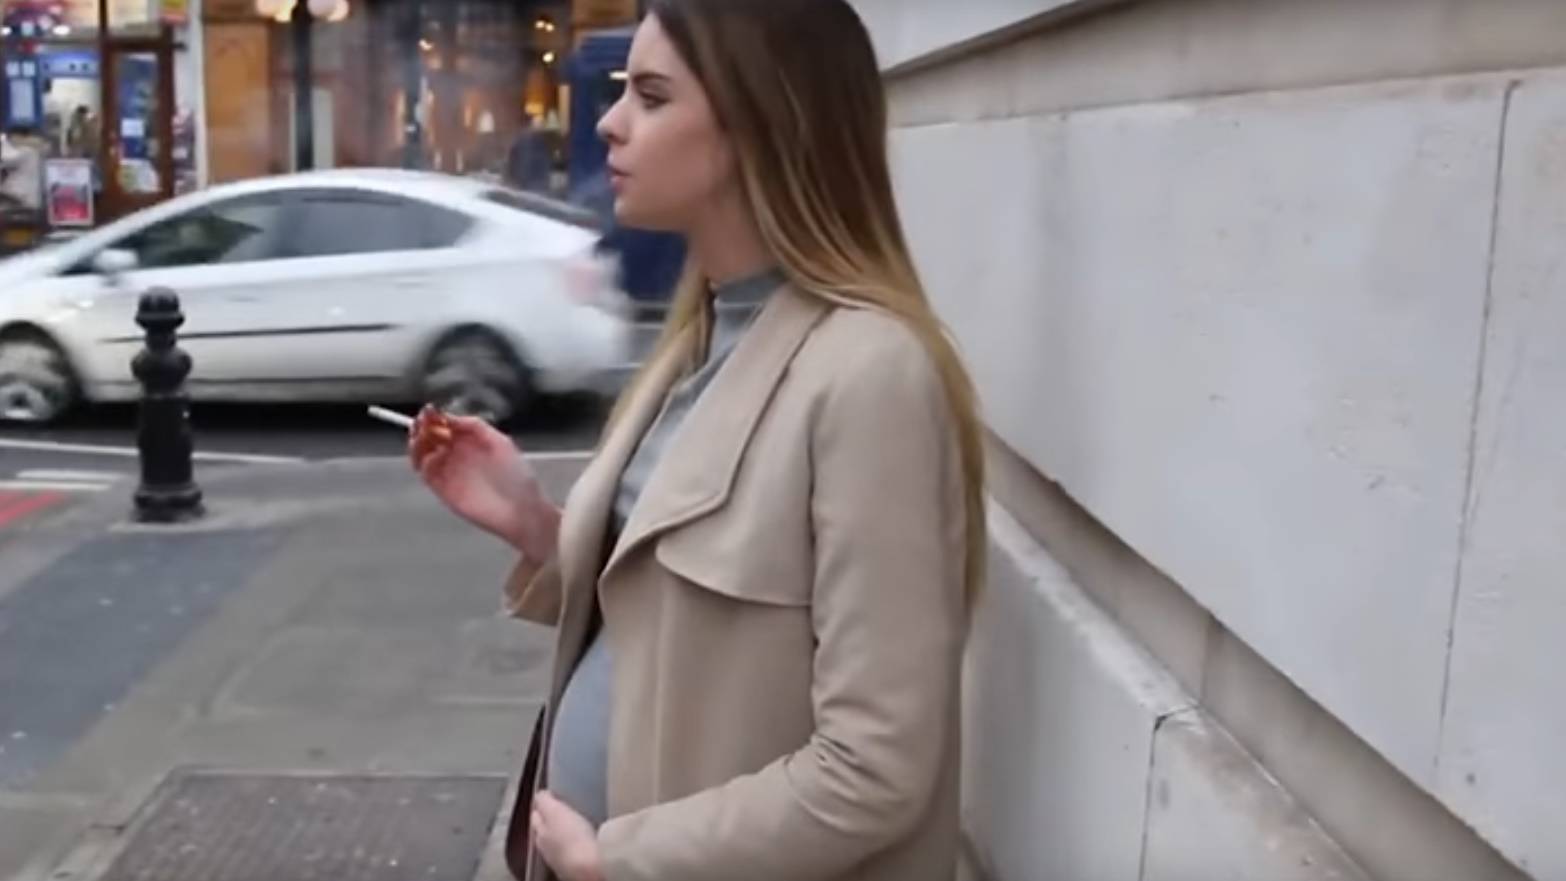 Elgondolkodtat vide: te adnl cigit egy terhes nnek?  